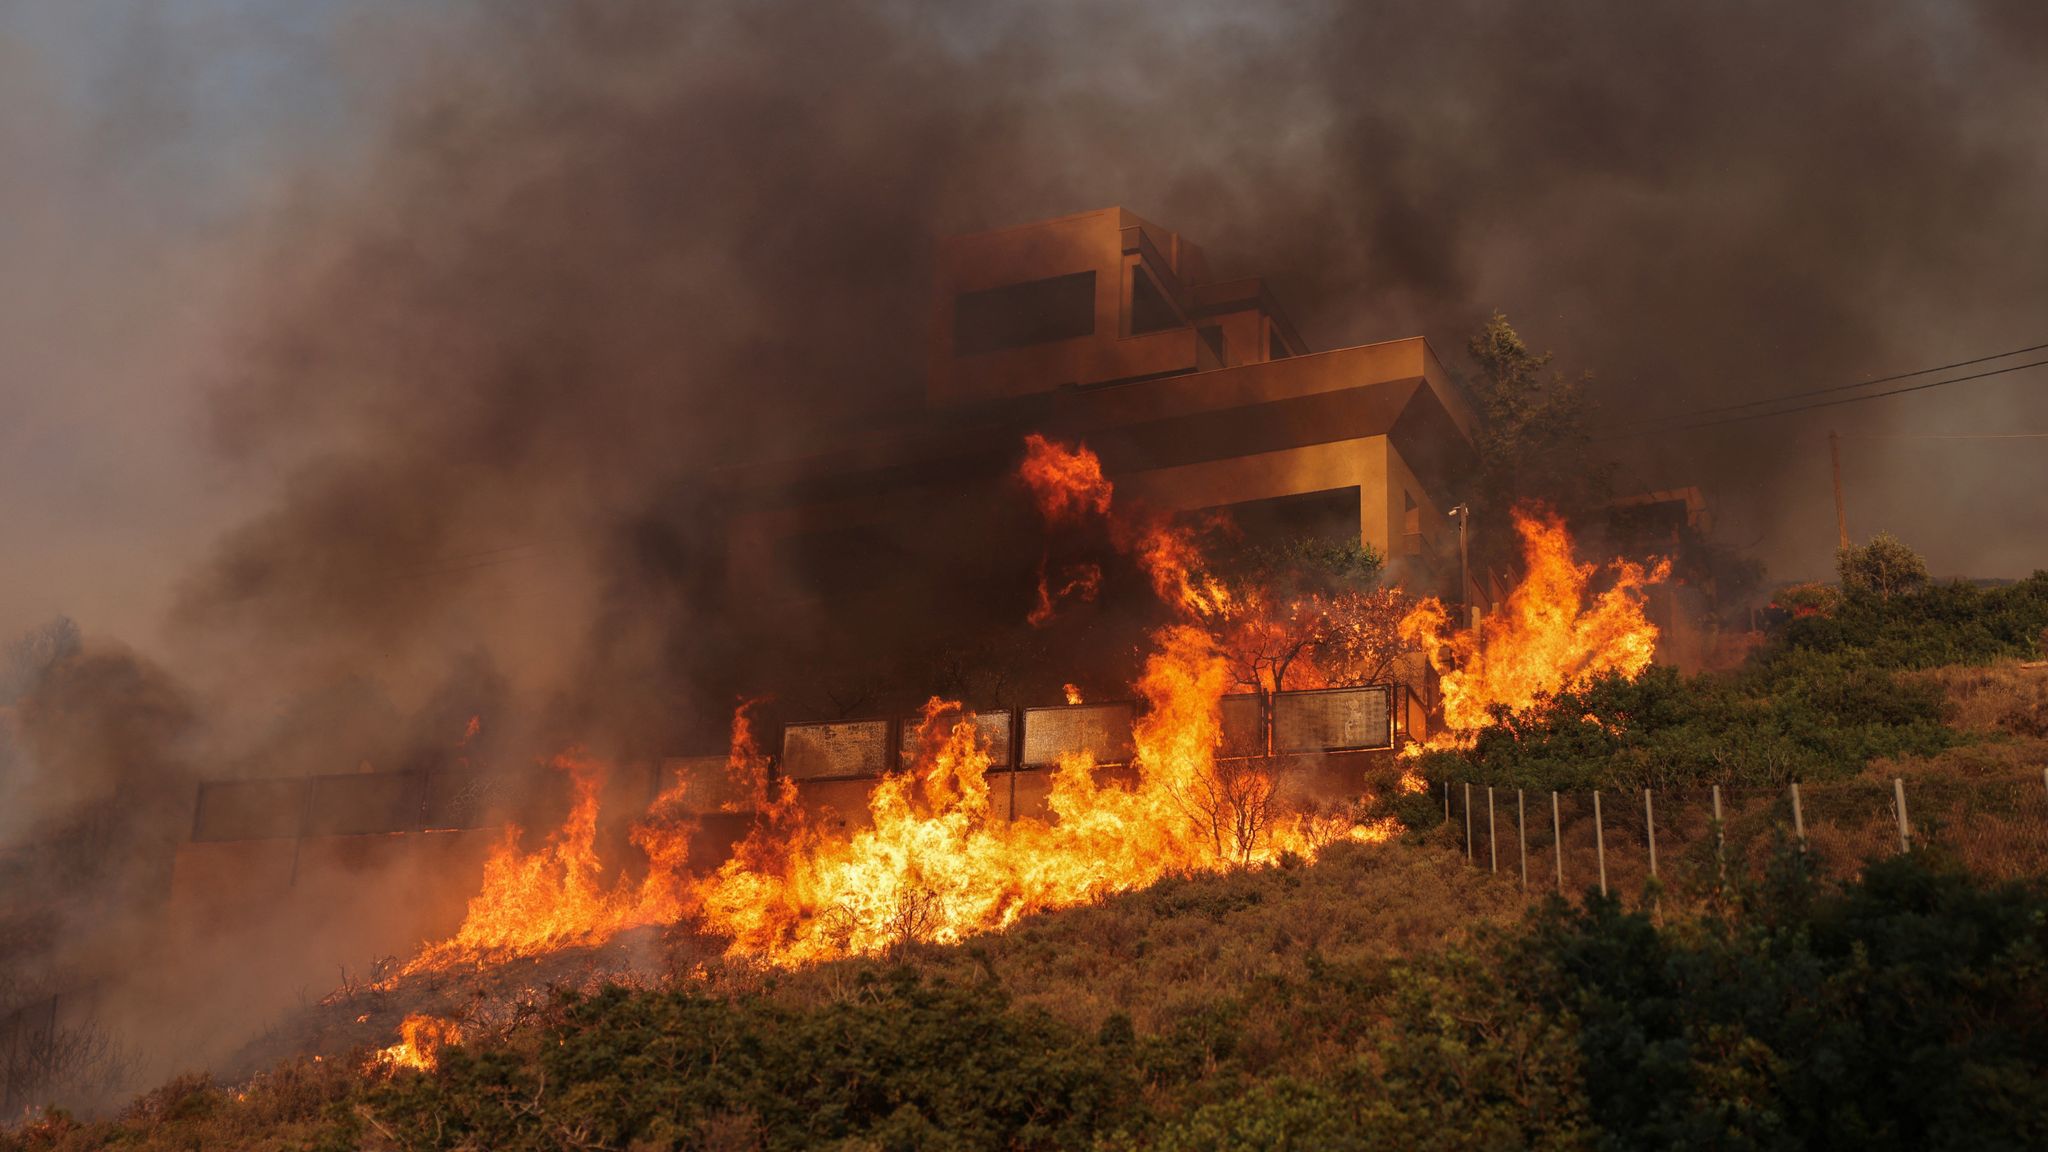 Amenzi usturătoare pentru piromanii din Grecia. Cei care provoacă incendii vor ajunge la închisoare